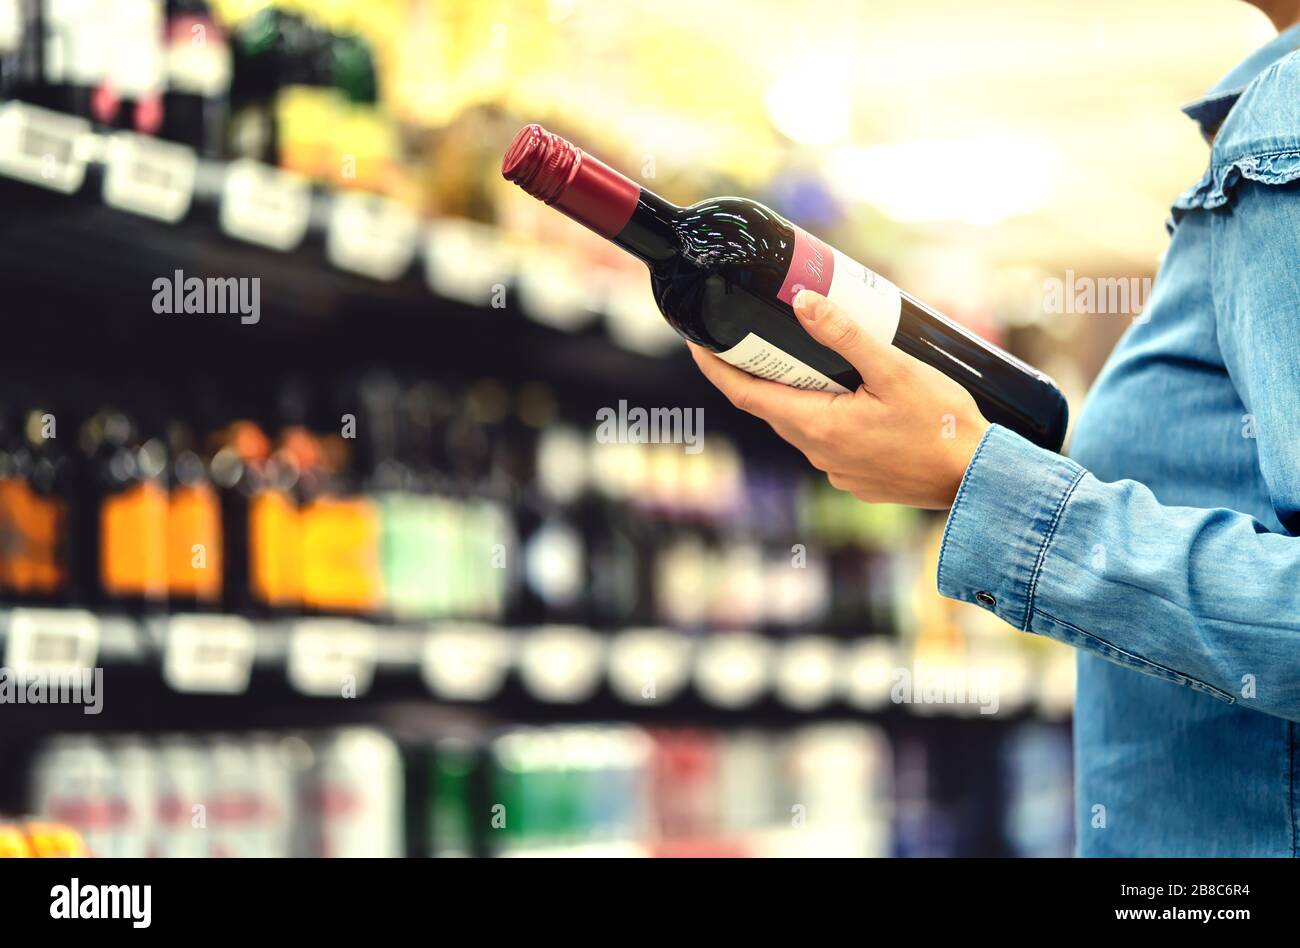 Alkoholregal im Spirituosenladen oder im Supermarkt. Frau kauft eine Flasche Rotwein und schaut im Geschäft auf alkoholische Getränke. Stockfoto